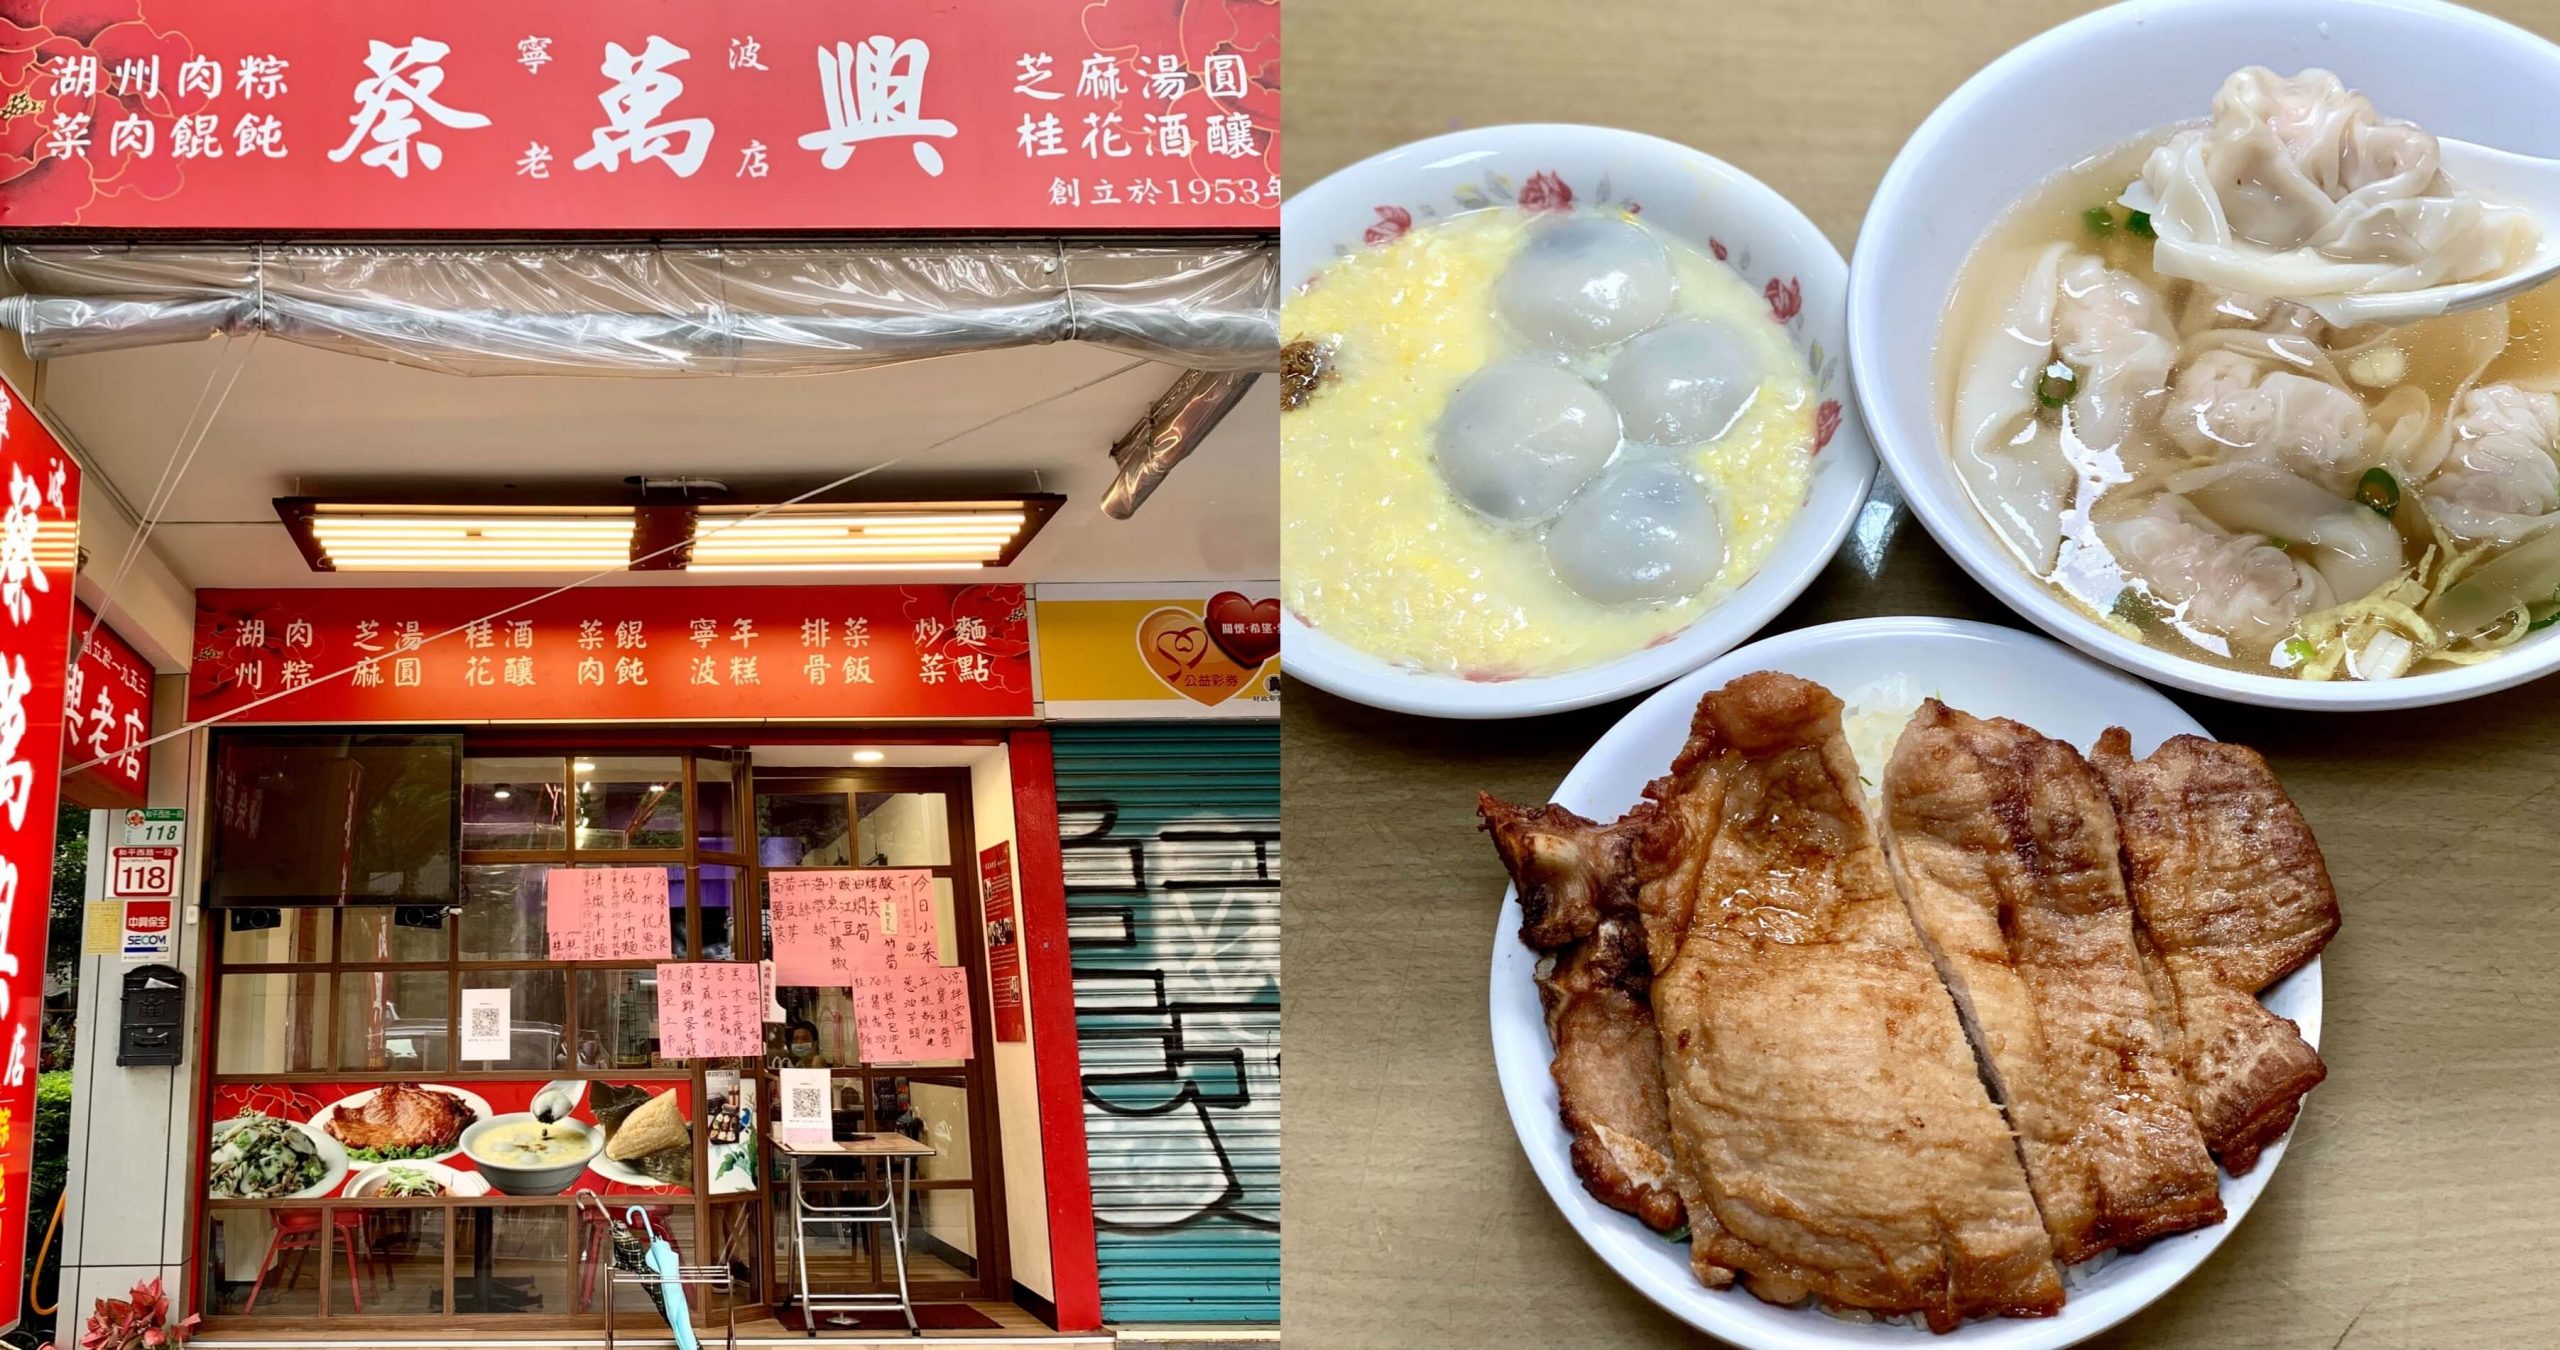 台北美食 蔡萬興老店 走過一甲子的老店 是間超道地的寧波菜館 來這必吃排骨菜飯及酒釀湯圓